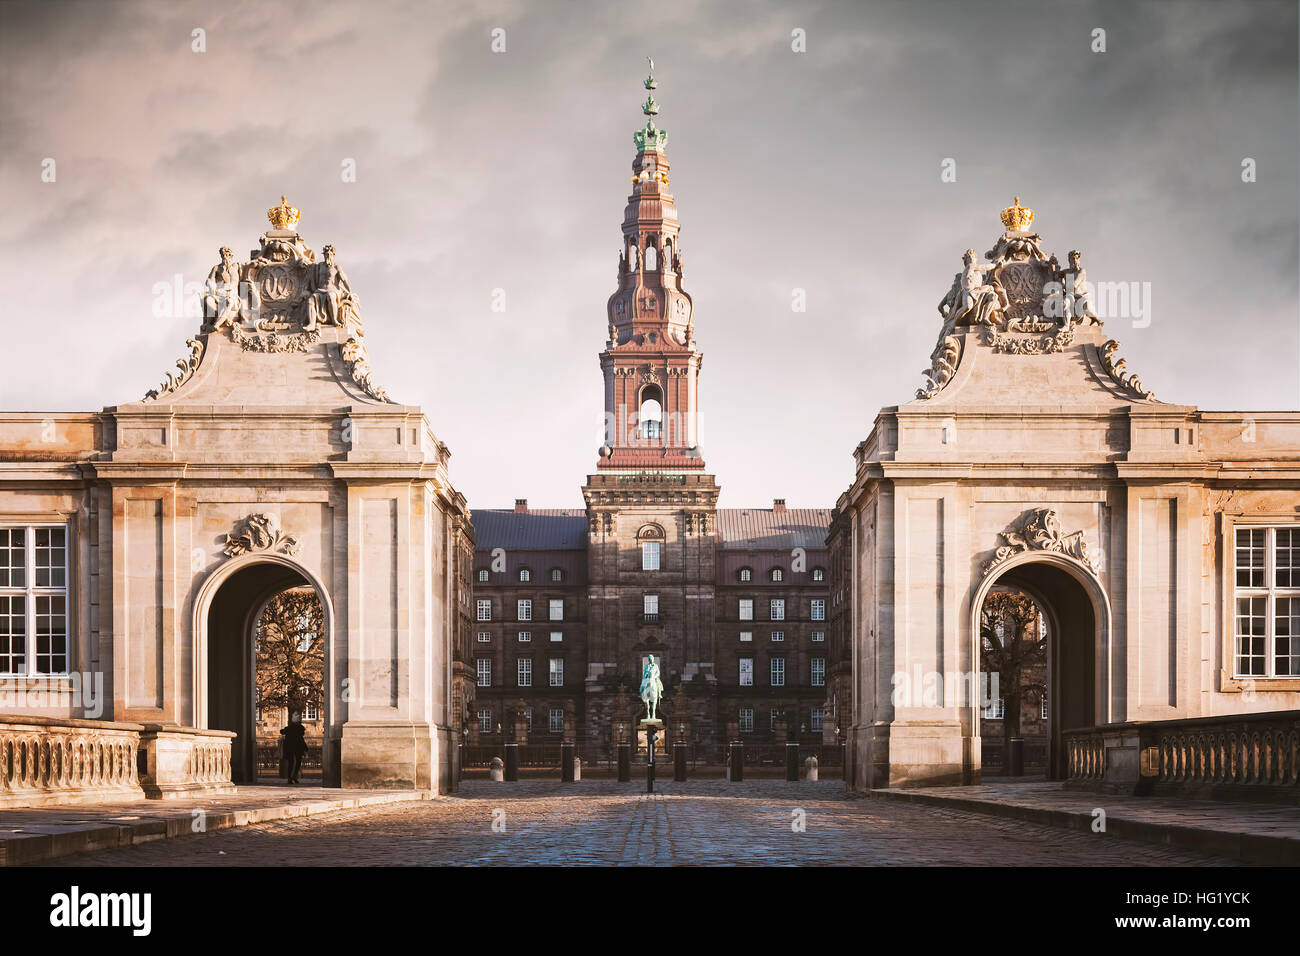 Bild von den großen Auftritt auf Schloss Christiansborg in Kopenhagen, Dänemark. Stockfoto